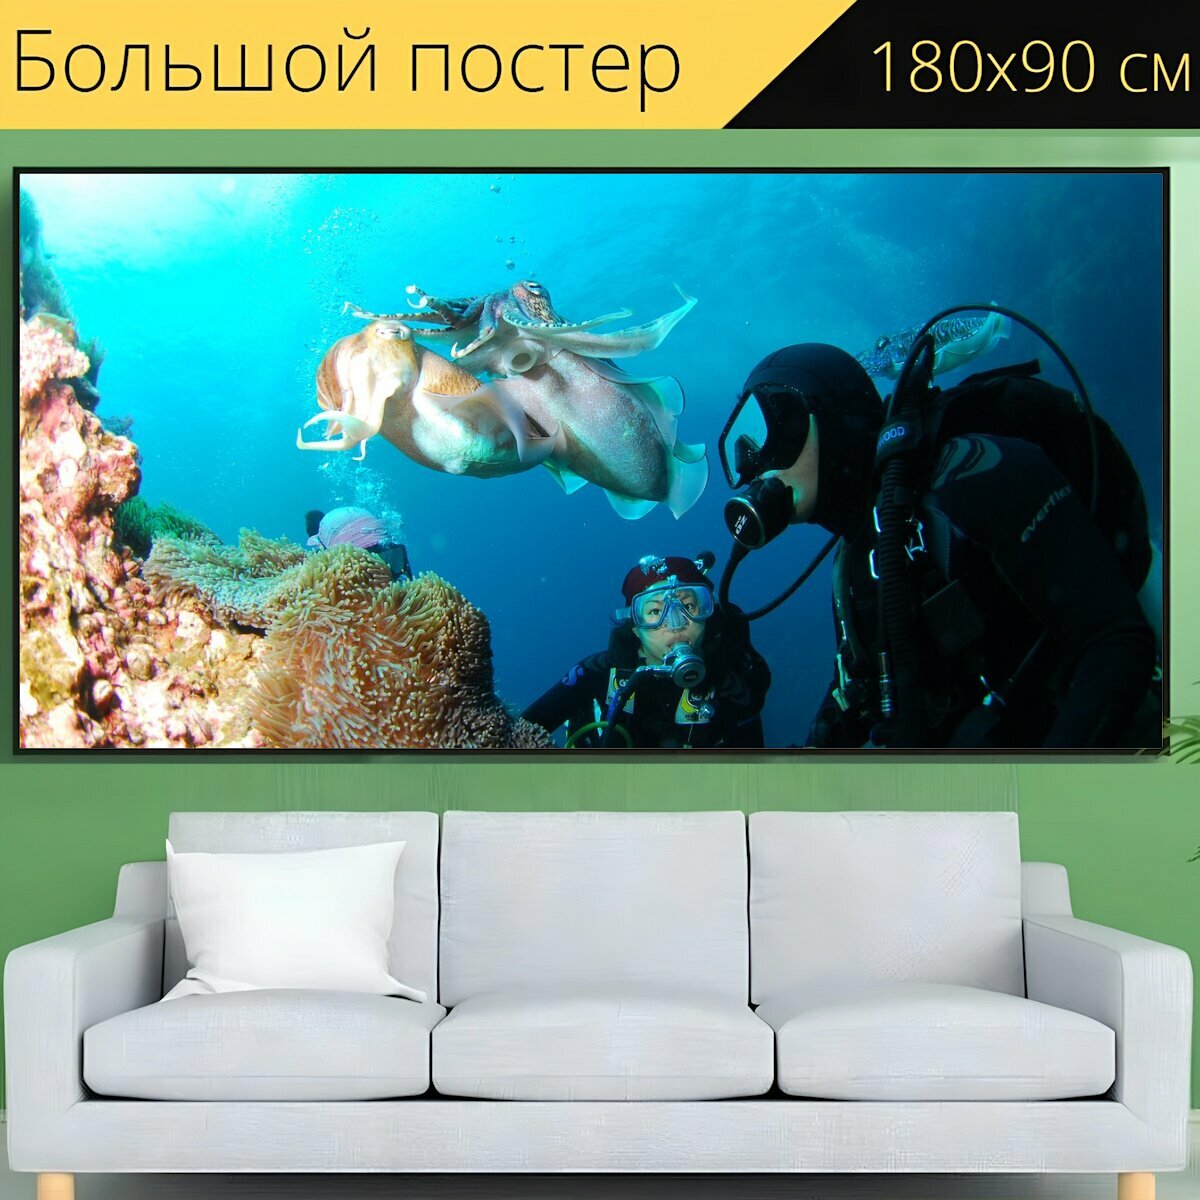 Большой постер "Дайвинг, подводный, океан" 180 x 90 см. для интерьера